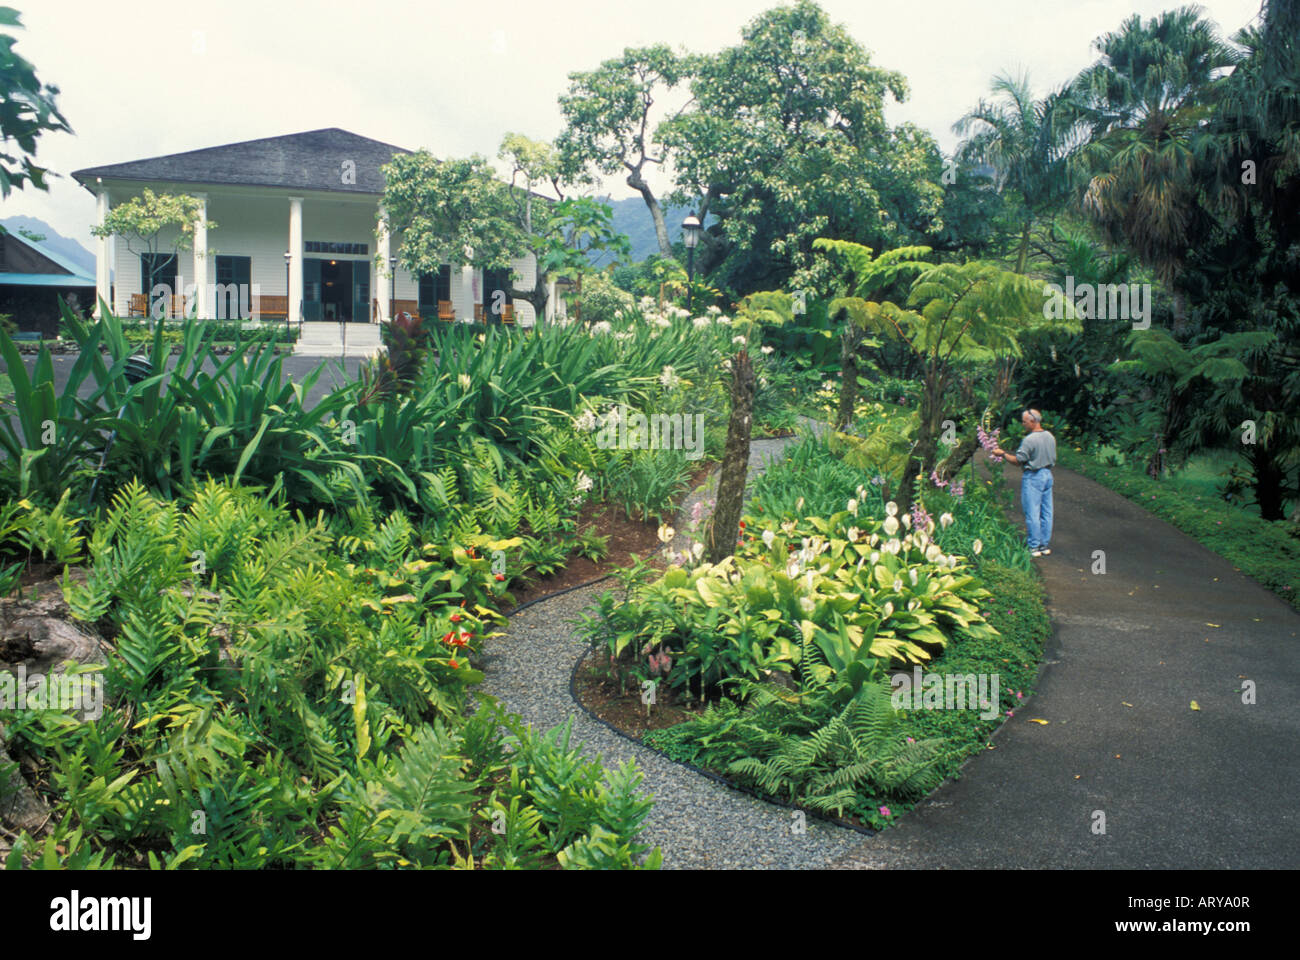 Un uomo prende una tranquilla passeggiata attraverso i giardini dello storico Queen Emma's Summer Palace situato fuori la I Pali Hwy, Oahu. Foto Stock